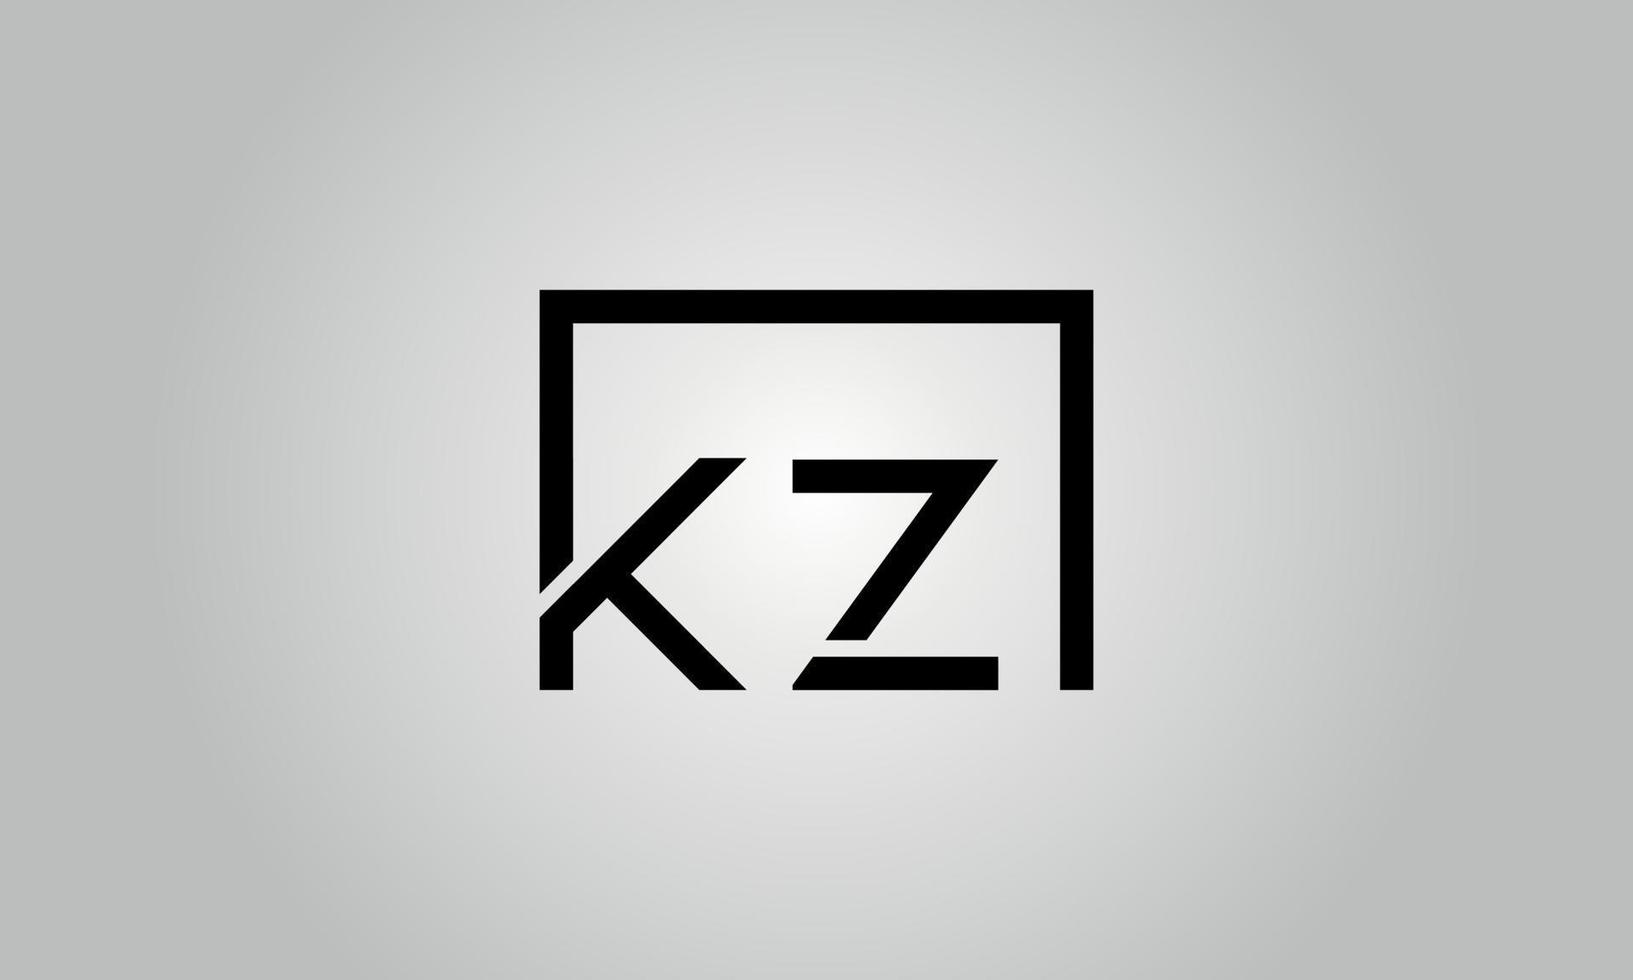 Buchstabe kz-Logo-Design. kzlogo mit quadratischer Form in schwarzen Farben Vektor kostenlose Vektorvorlage.